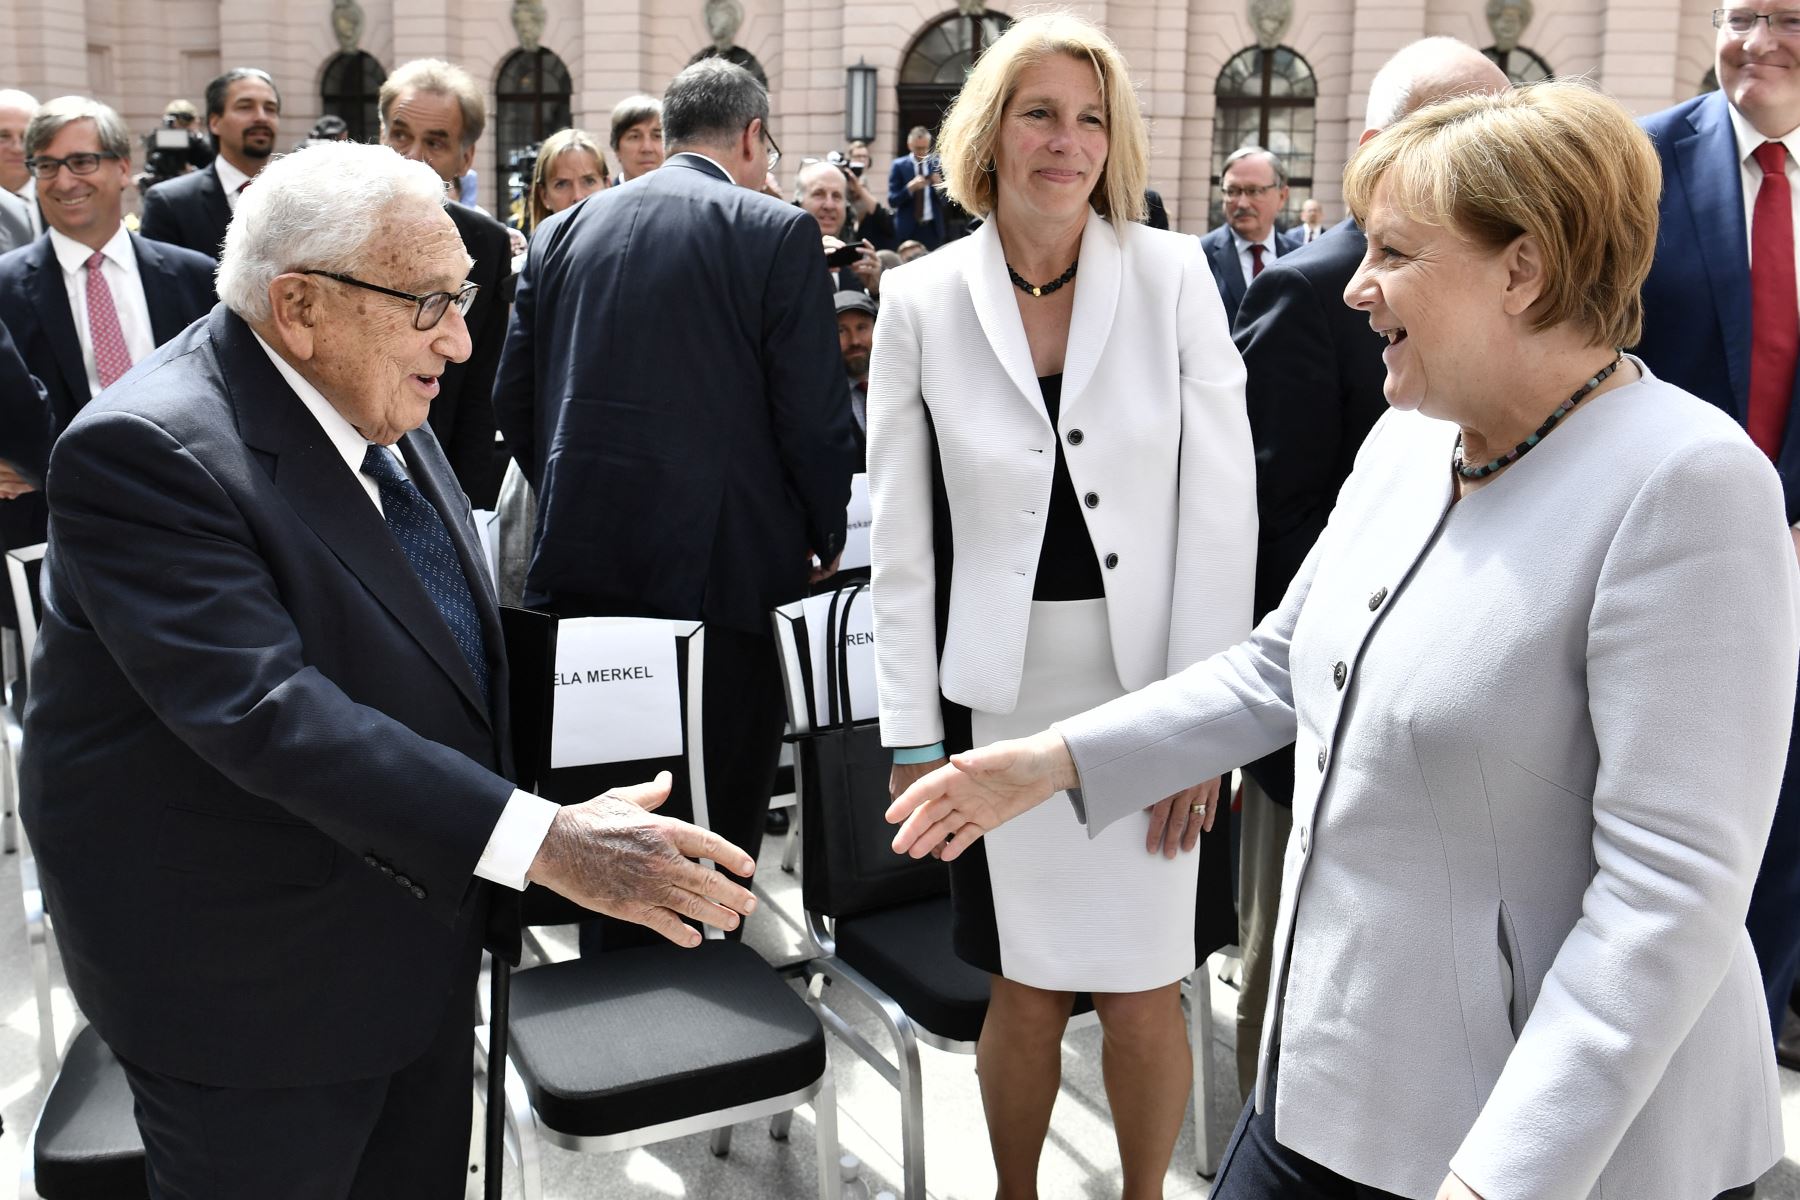 El ex Secretario de Estado estadounidense Henry Kissinger  saluda a la canciller alemana Angela Merkel  cuando llega a una conferencia titulada "70 años del Plan Marshall" organizada por el Fondo Marshall alemán de los Estados Unidos en el Deutsches Historisches Museum de Berlín el 21 de junio de 2017.
Foto: AFP